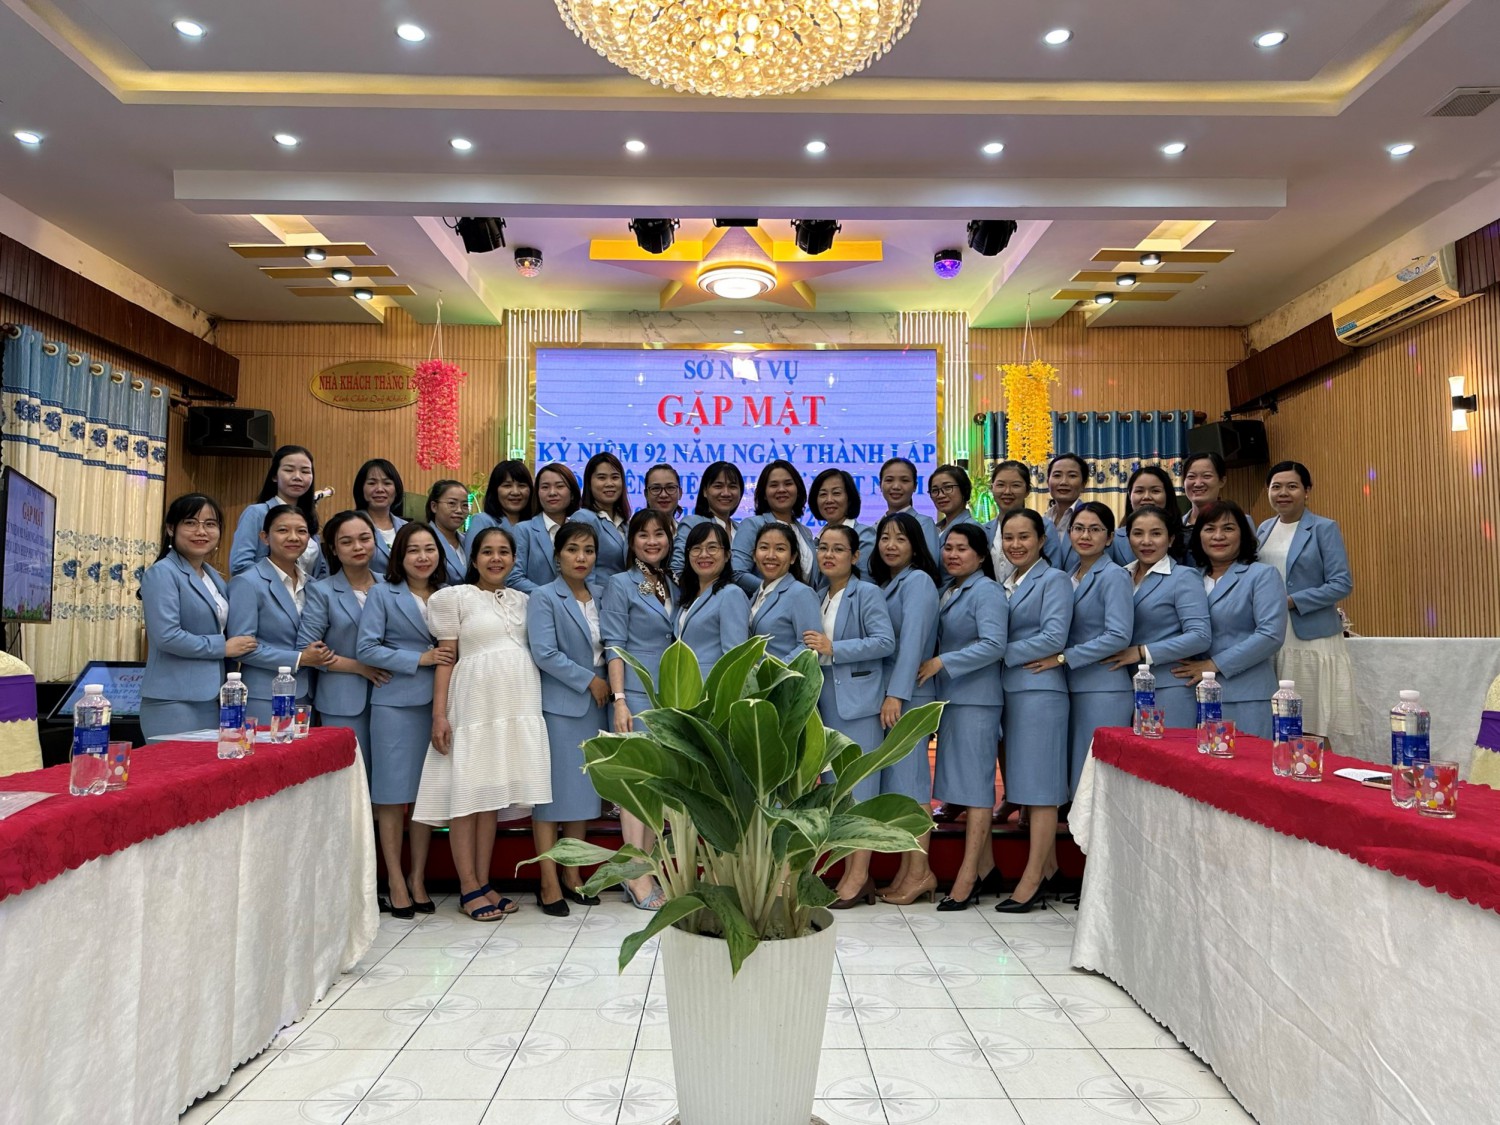 Sở Nội vụ tổ chức gặp mặt Chào mừng kỷ niệm 92 năm ngày thành lập Hội liên hiệp Phụ nữ Việt Nam 20/10